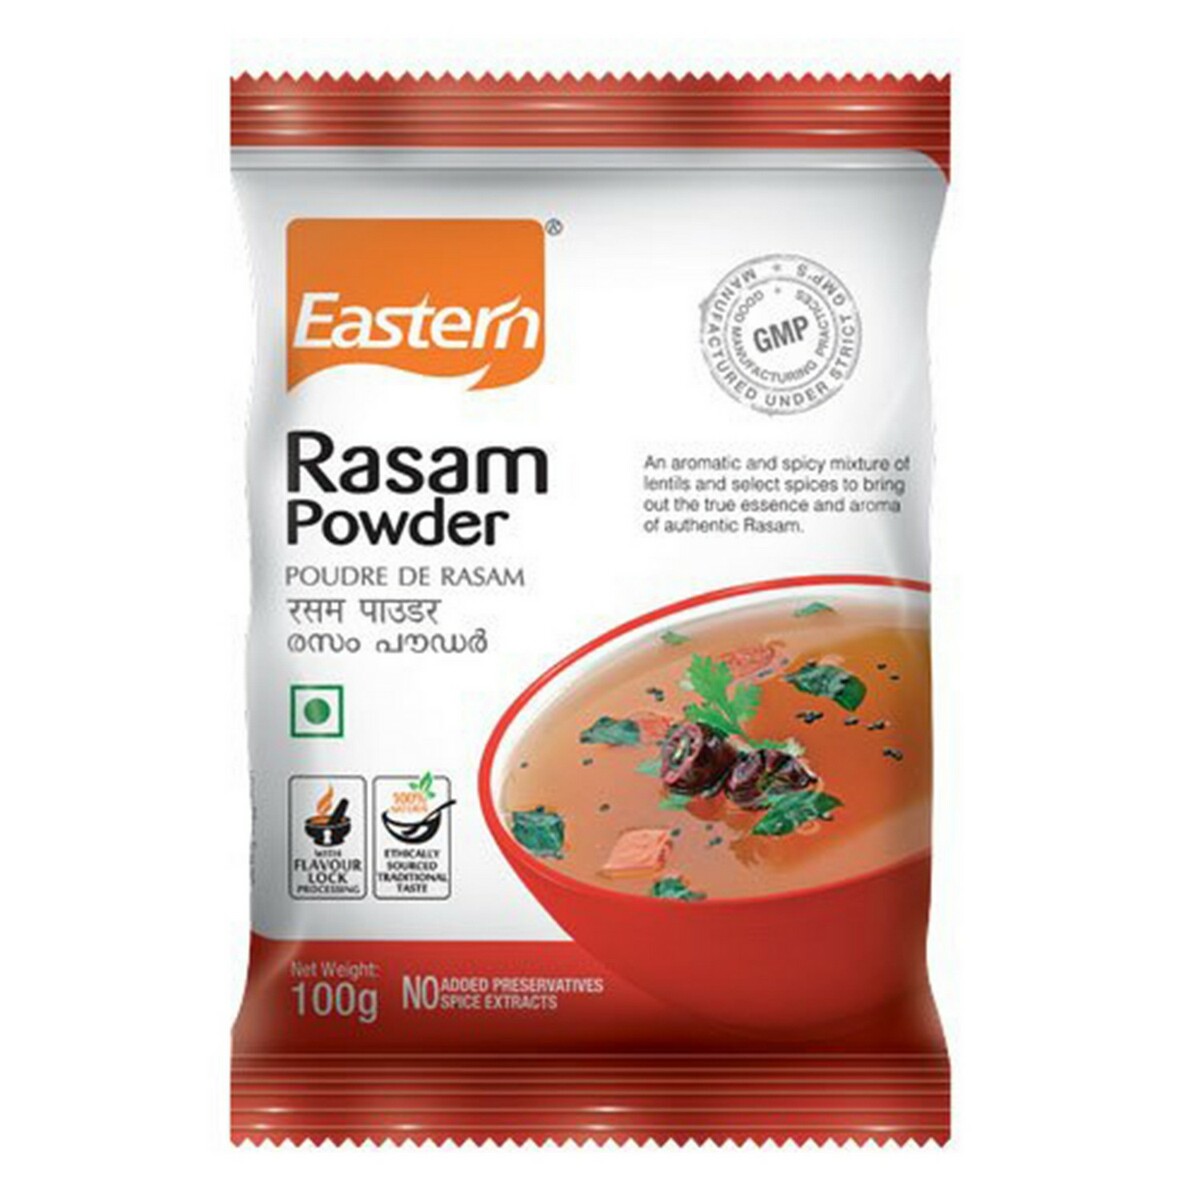 Eastern Rasam Powder 100g